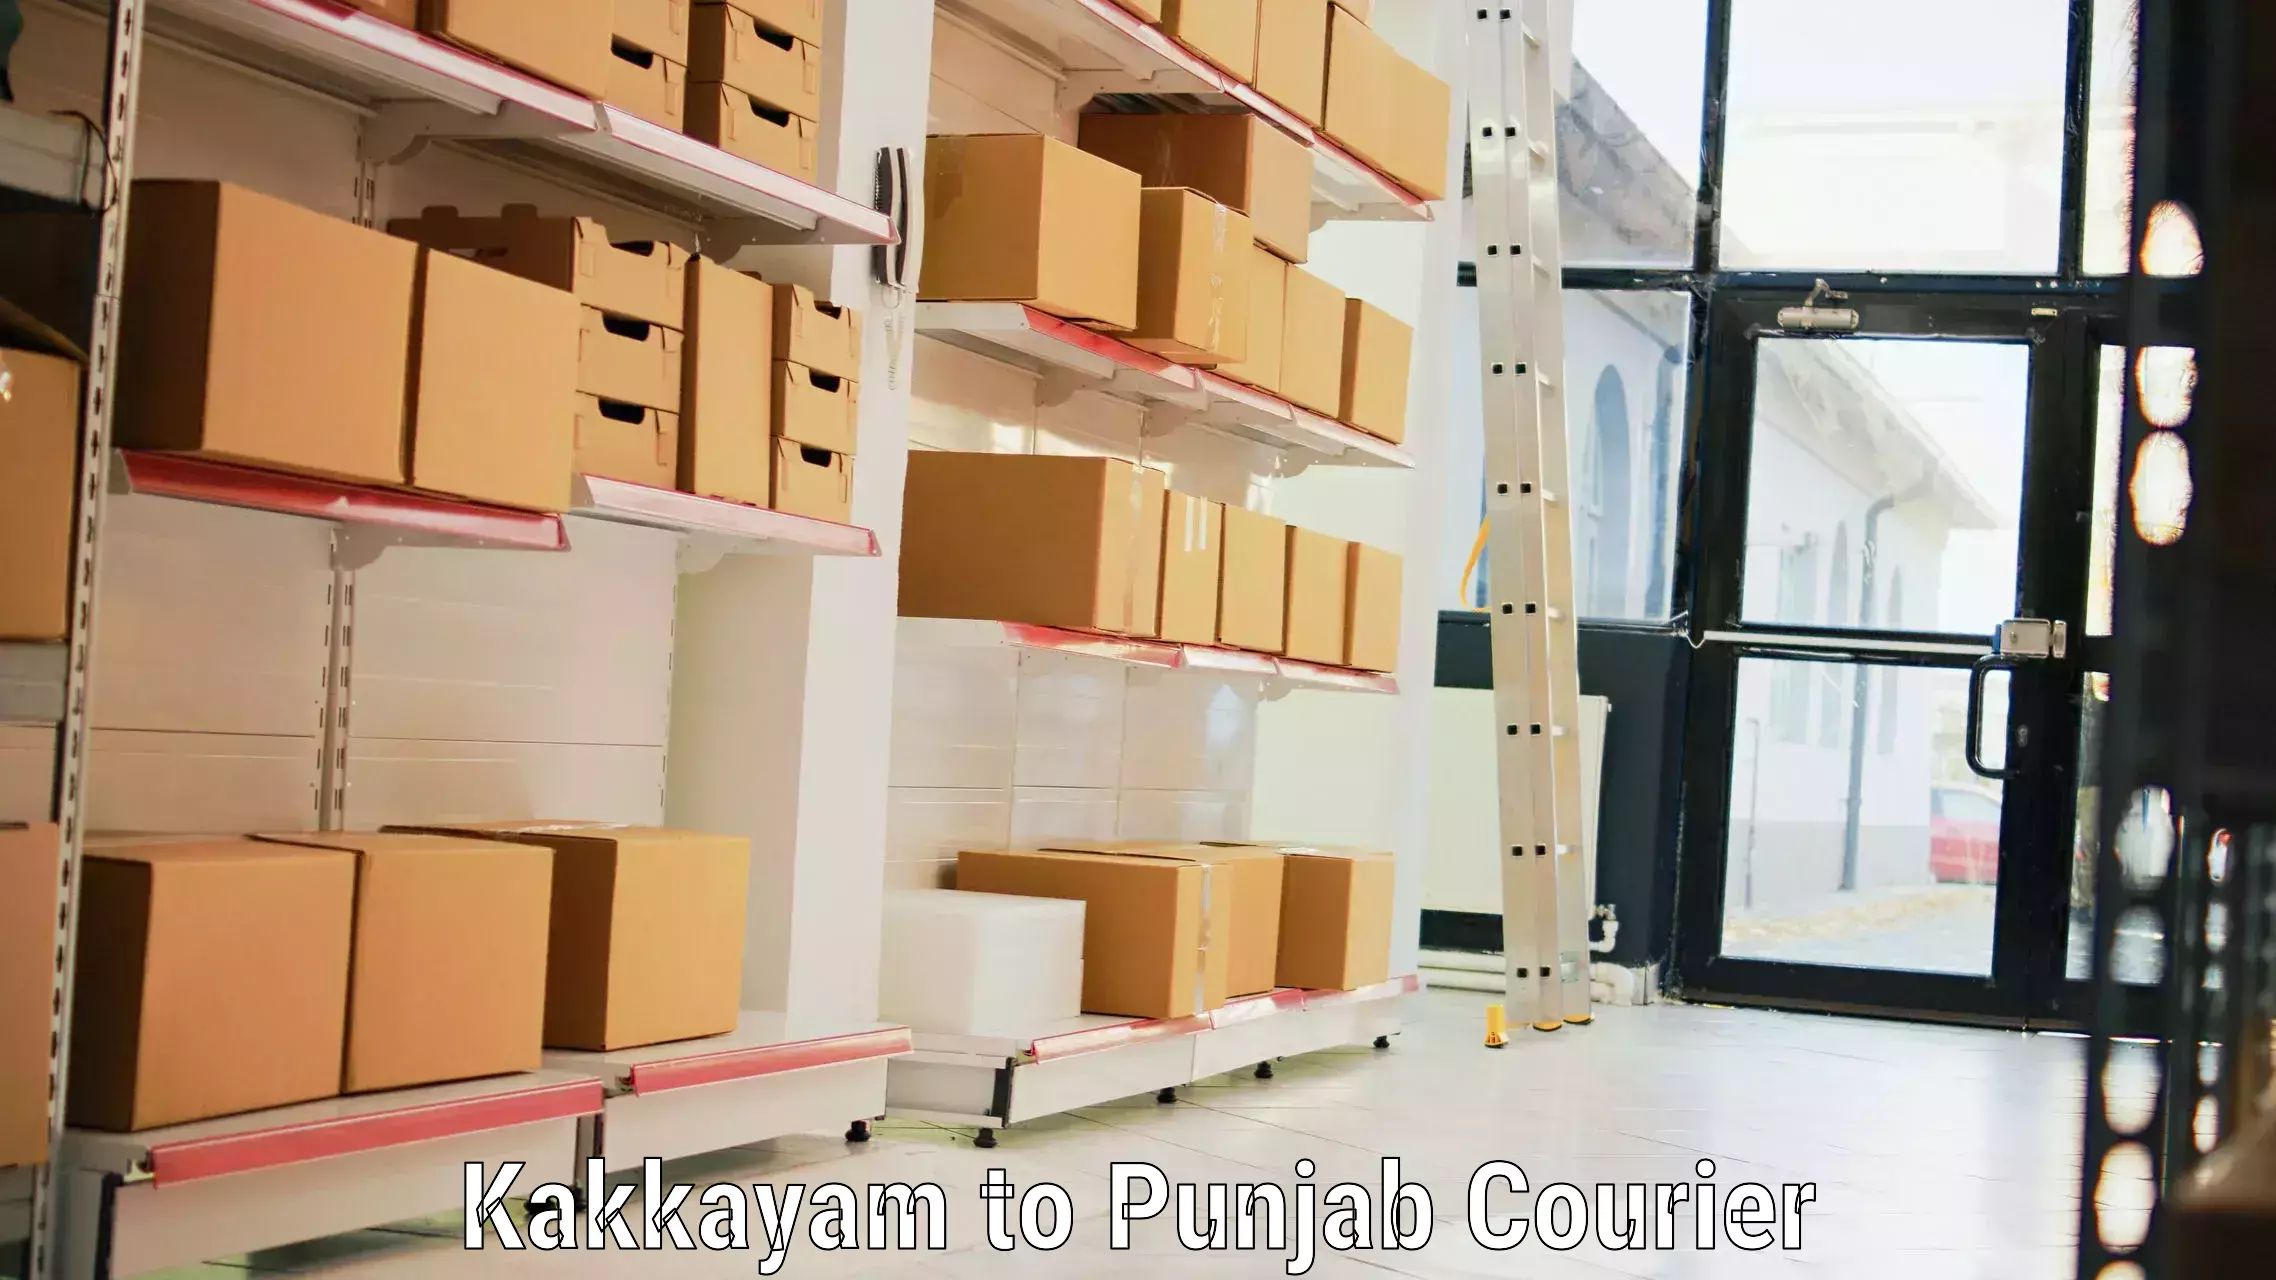 Baggage shipping quotes Kakkayam to Punjab